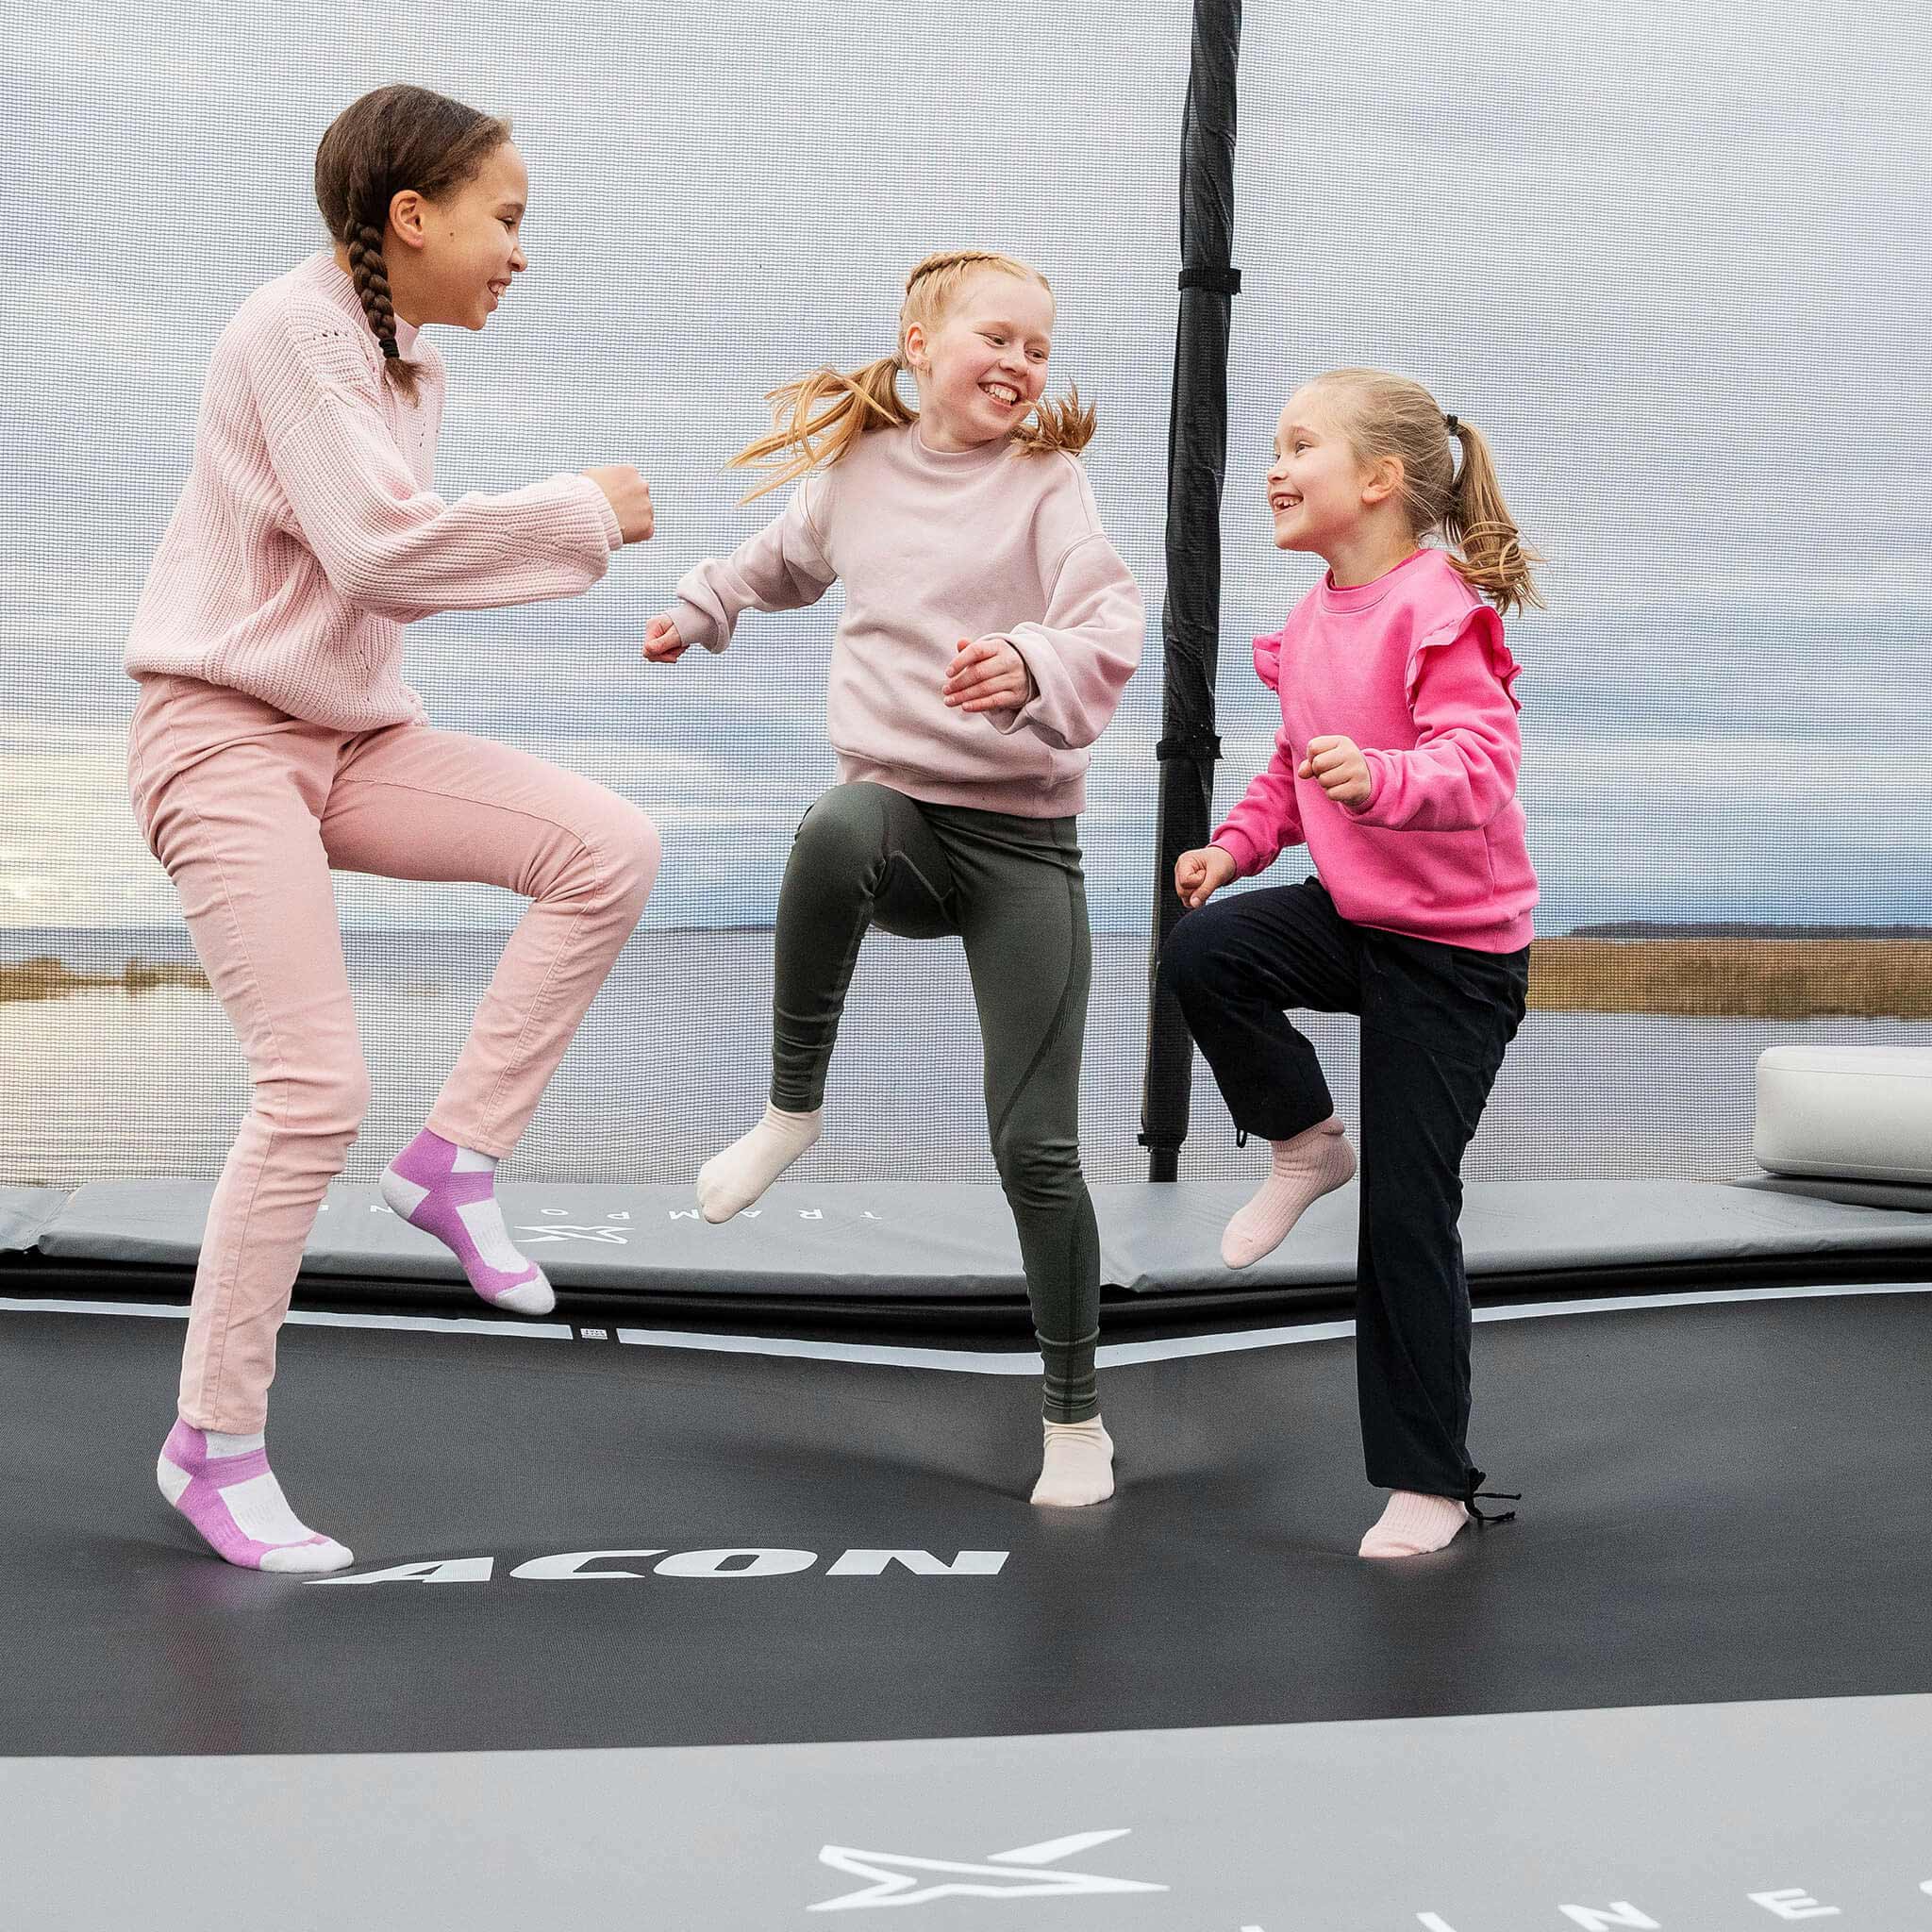 Trois filles joyeuses en chemise rose montent sur le trampoline Acon X. Une fille saute sur le trampoline Acon X. Deux filles se tiennent debout et regardent.